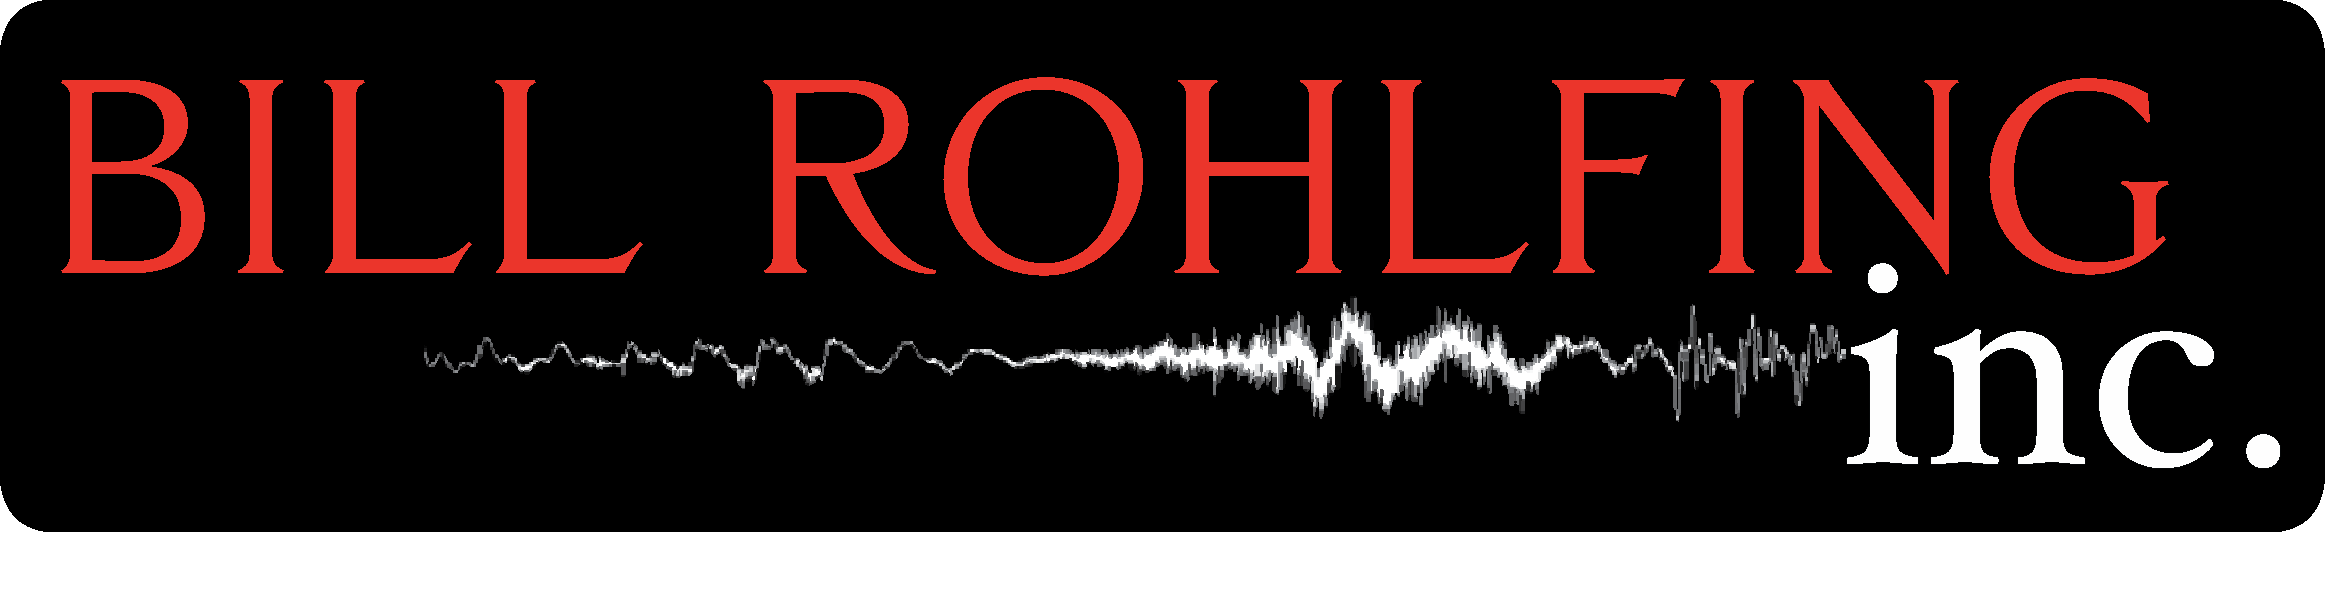 Bill Rohlfing, Inc. Logo